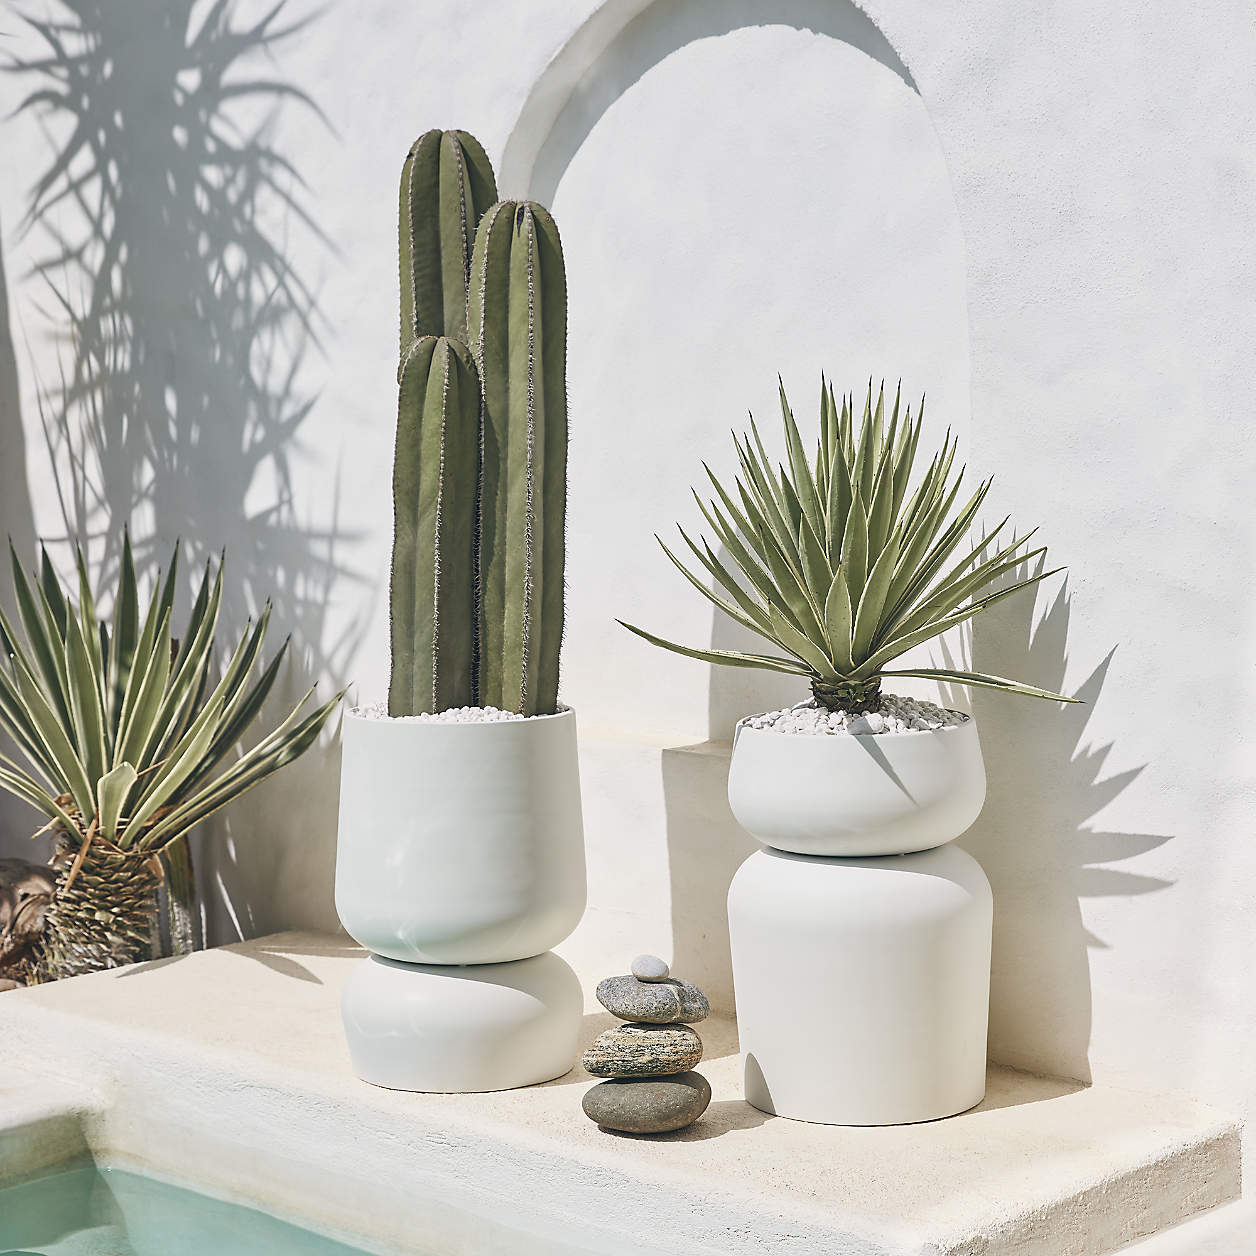 classic white metal vase, cactus